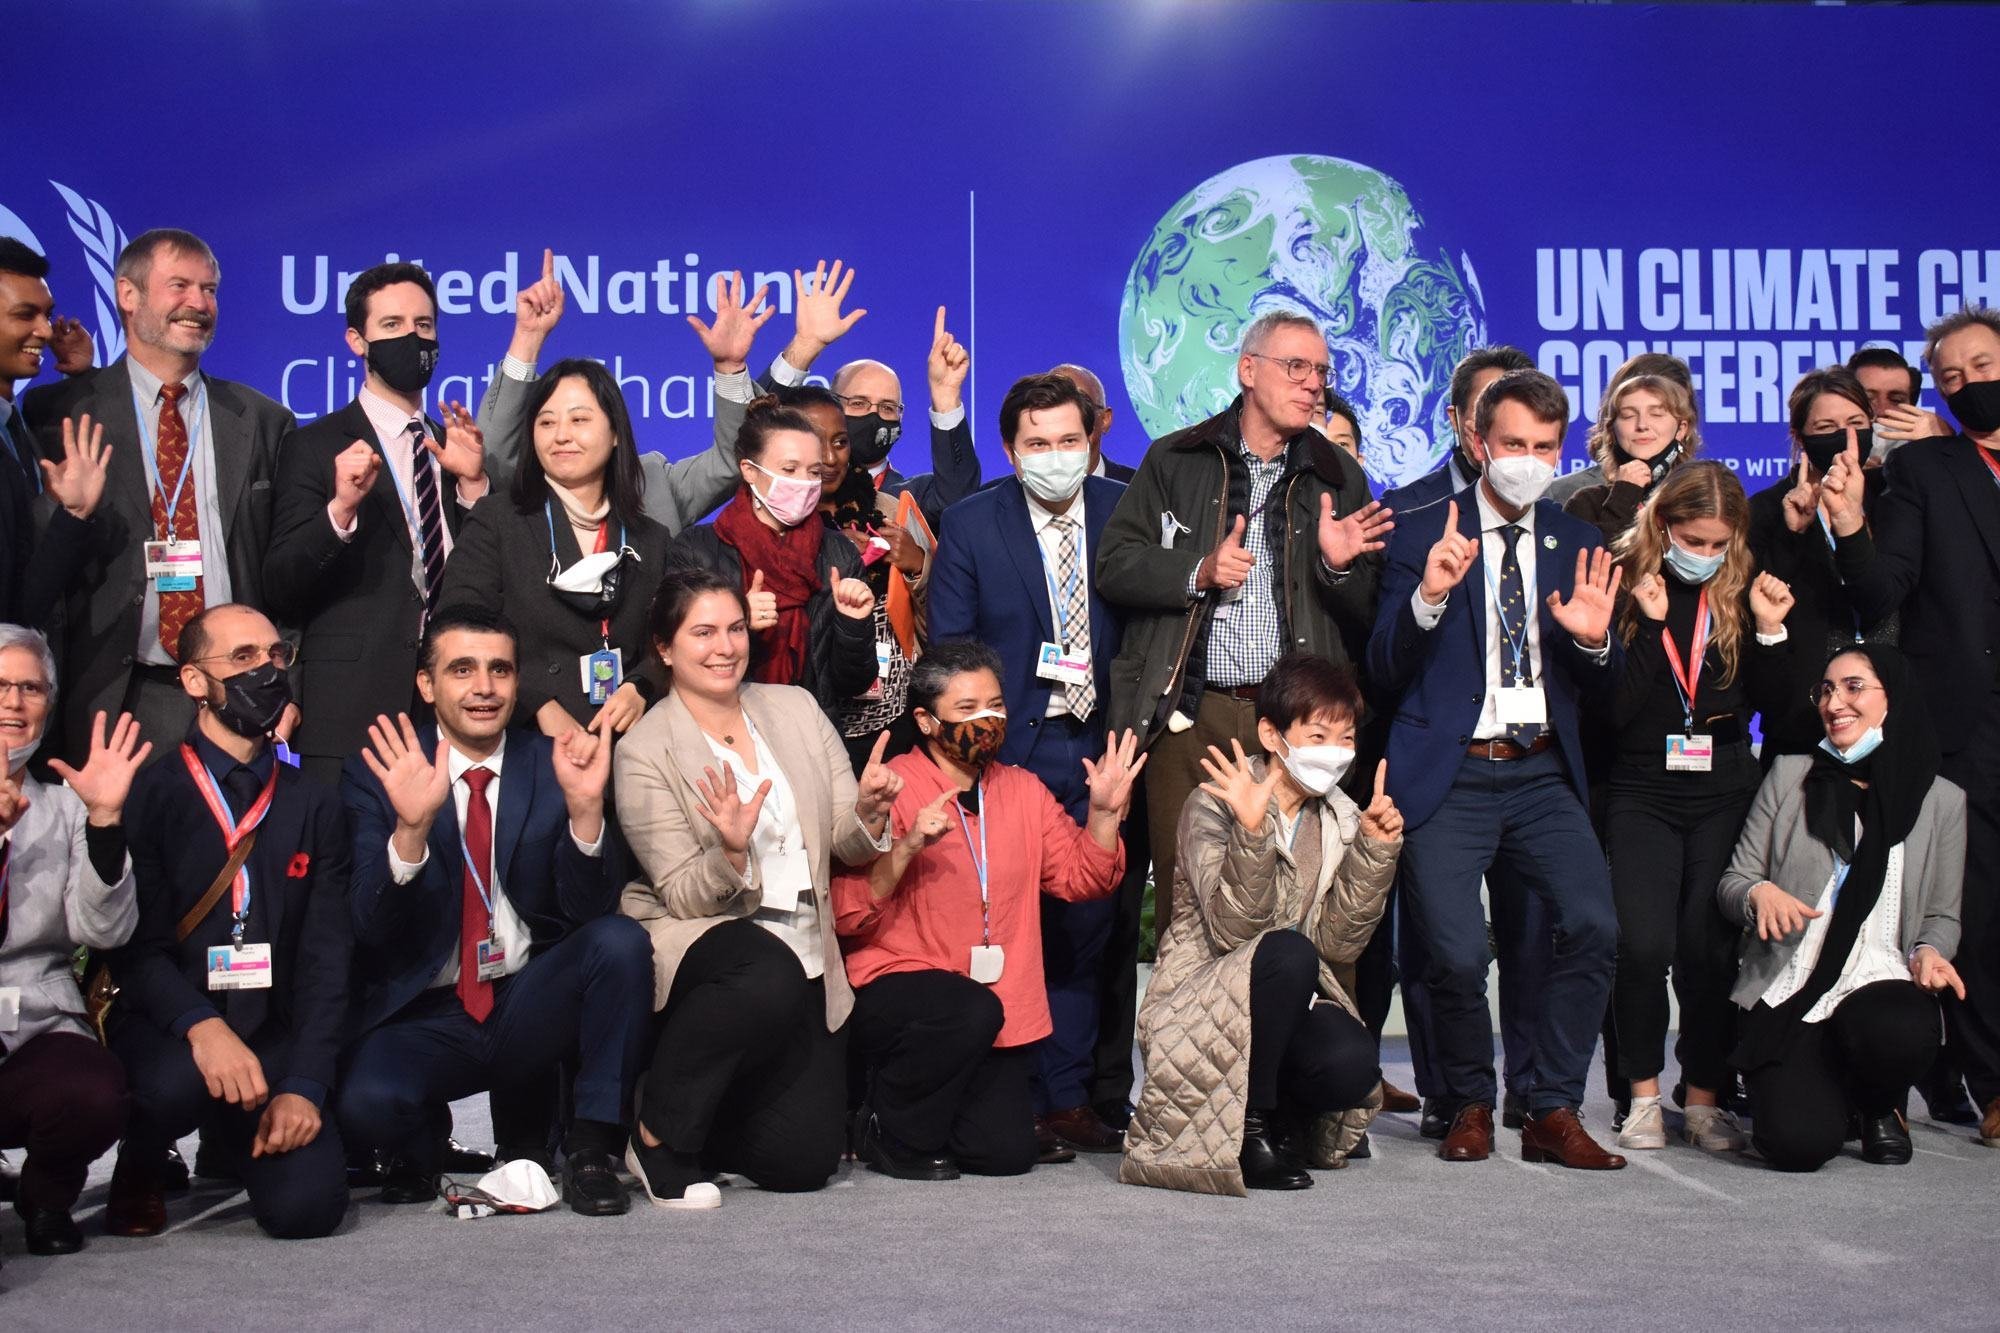 Negociadores marcando la clausura de la cumbre climática de las Naciones Unidas, COP26, que se inauguró en Glasgow, Escocia, el 31 de octubre. La conferencia buscó nuevos compromisos globales para abordar el cambio climático.